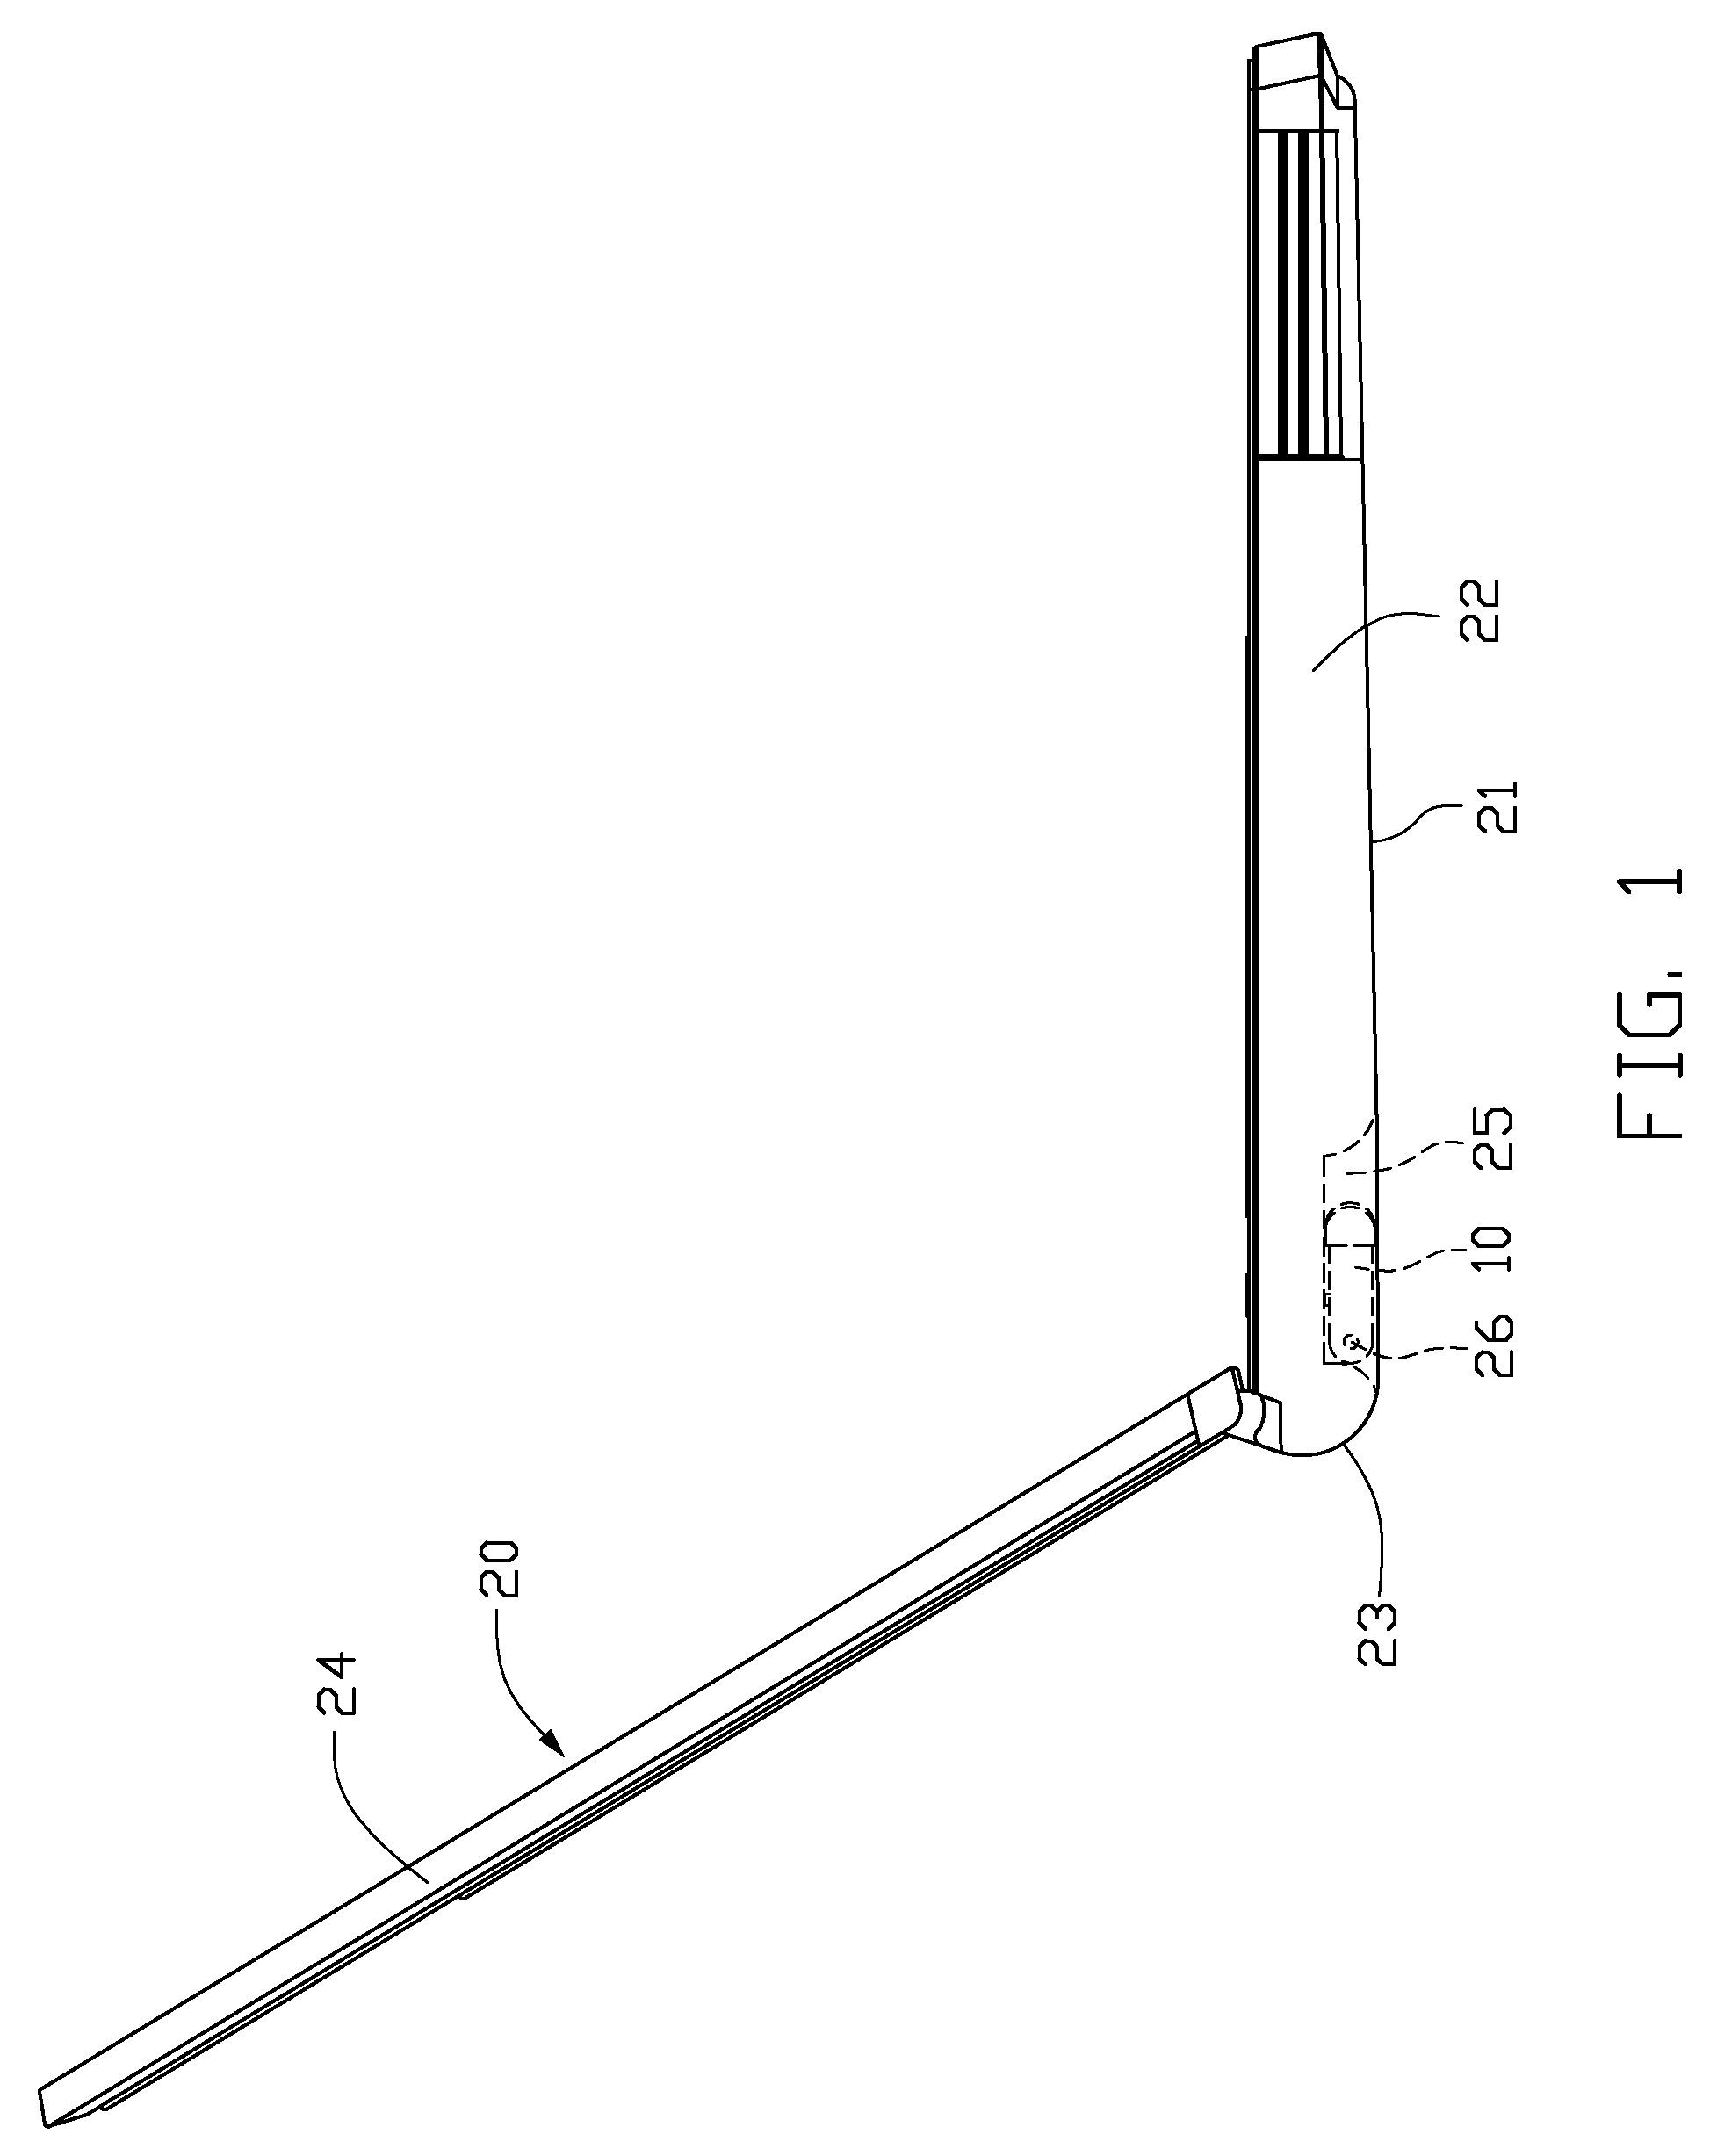 Angle regulator and equipment with the angle regulator